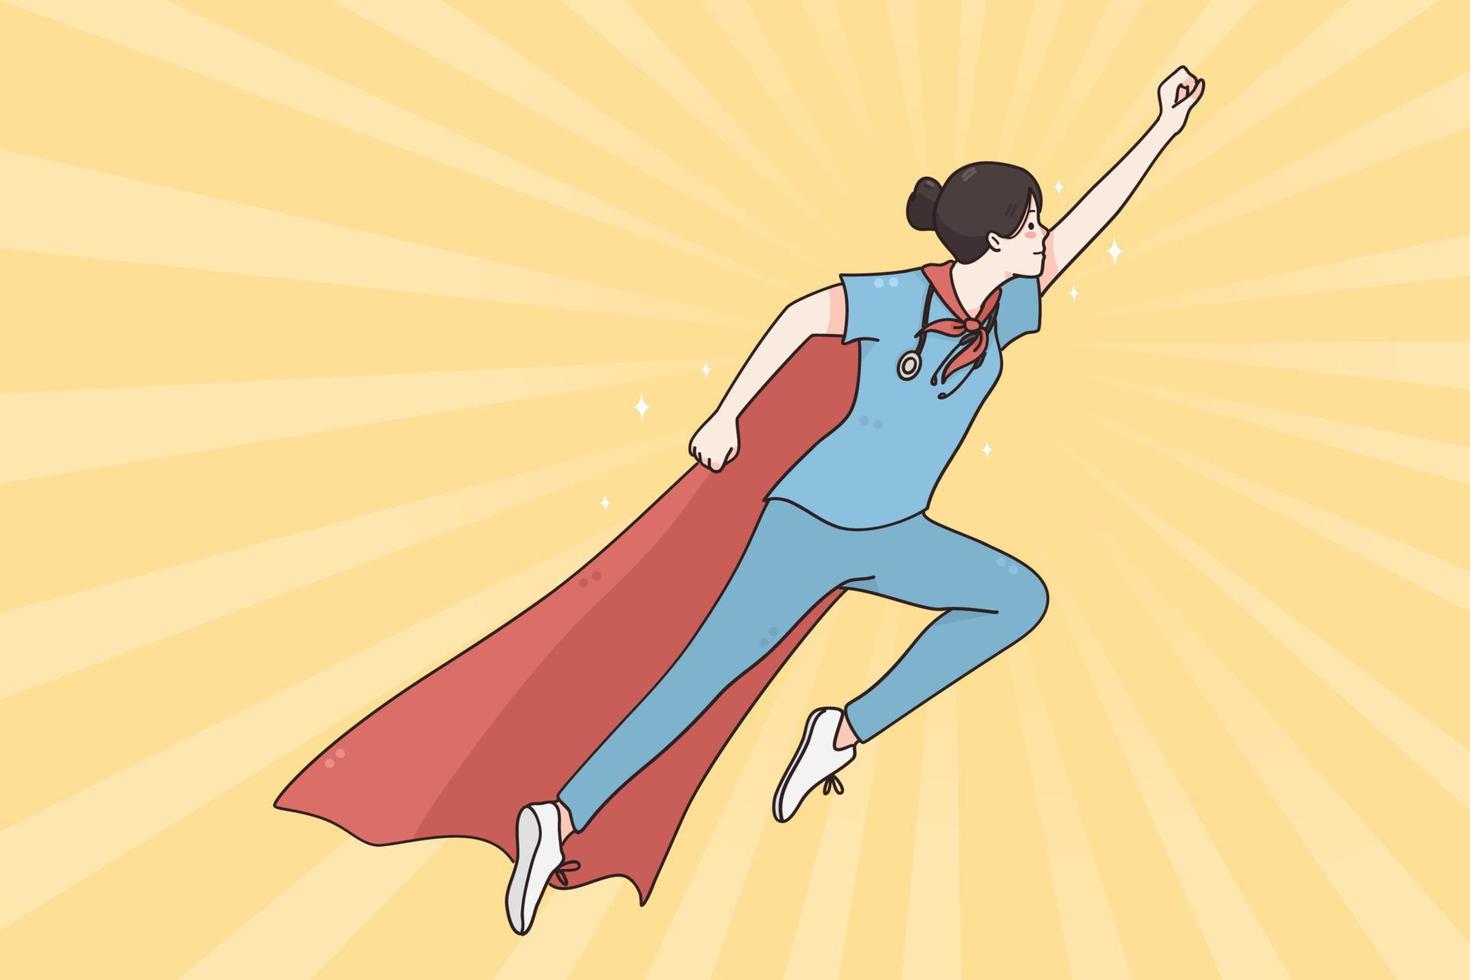 médico super-herói em medicina durante o conceito de pandemia. médica vestindo capa de super-herói voando pronta para ajudar durante ilustração vetorial de surto de coronavírus vetor